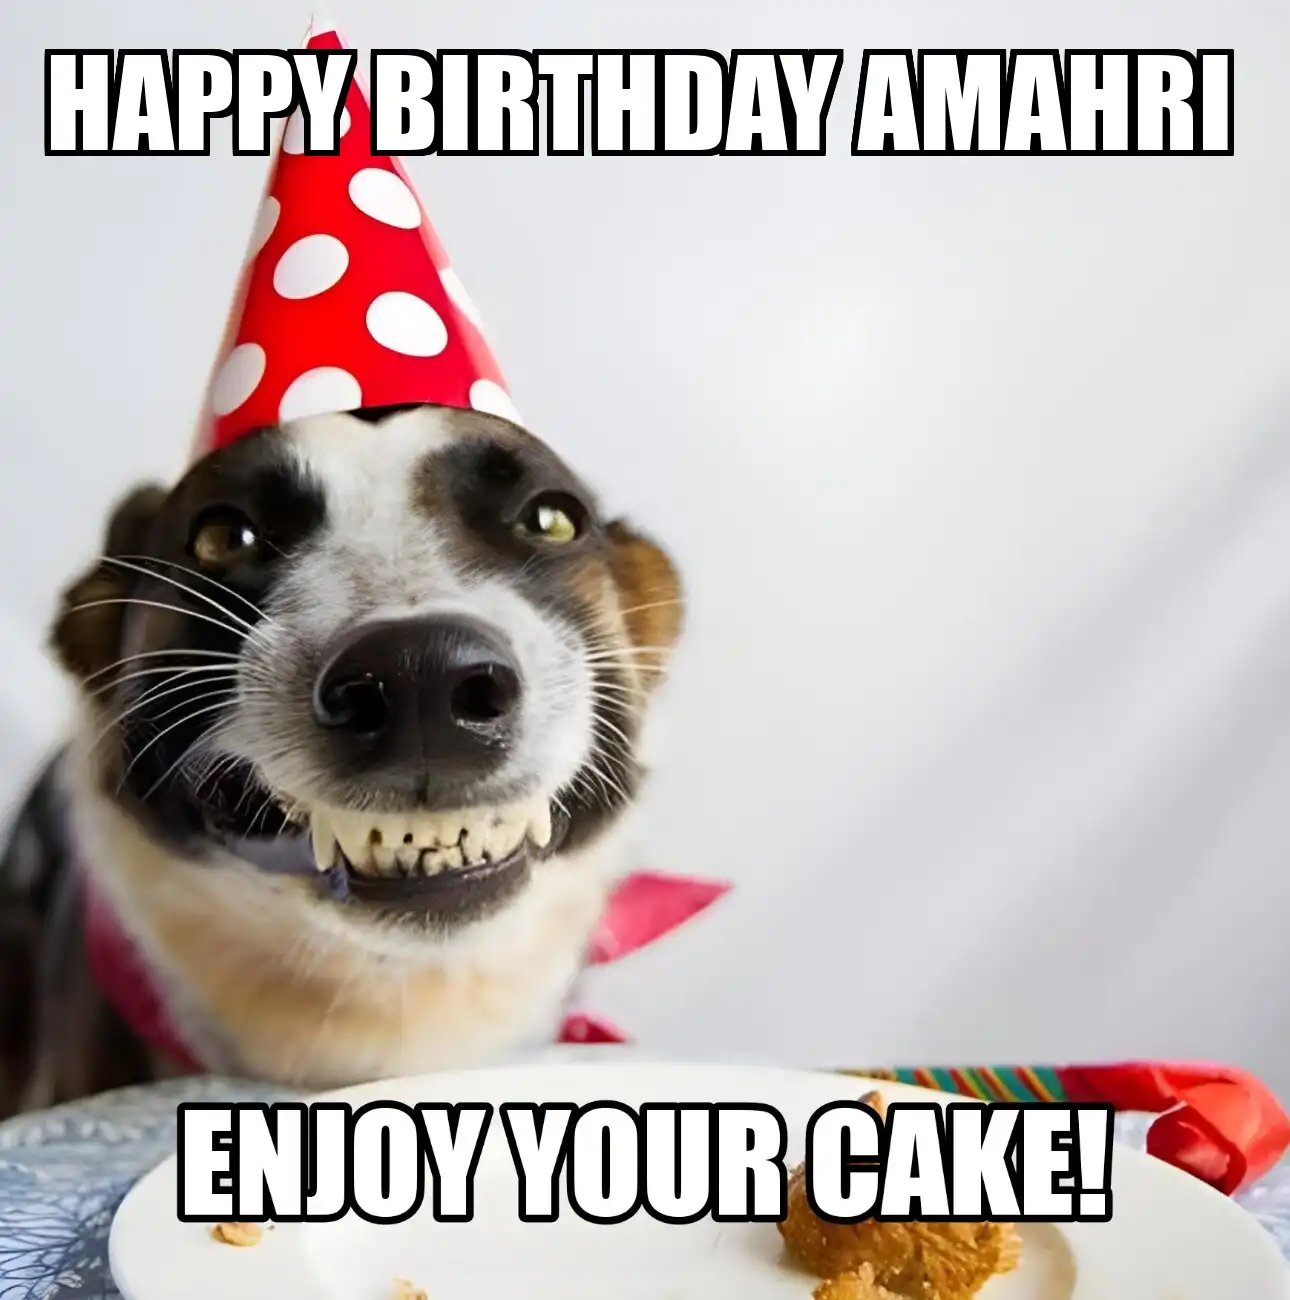 Happy Birthday Amahri Enjoy Your Cake Dog Meme